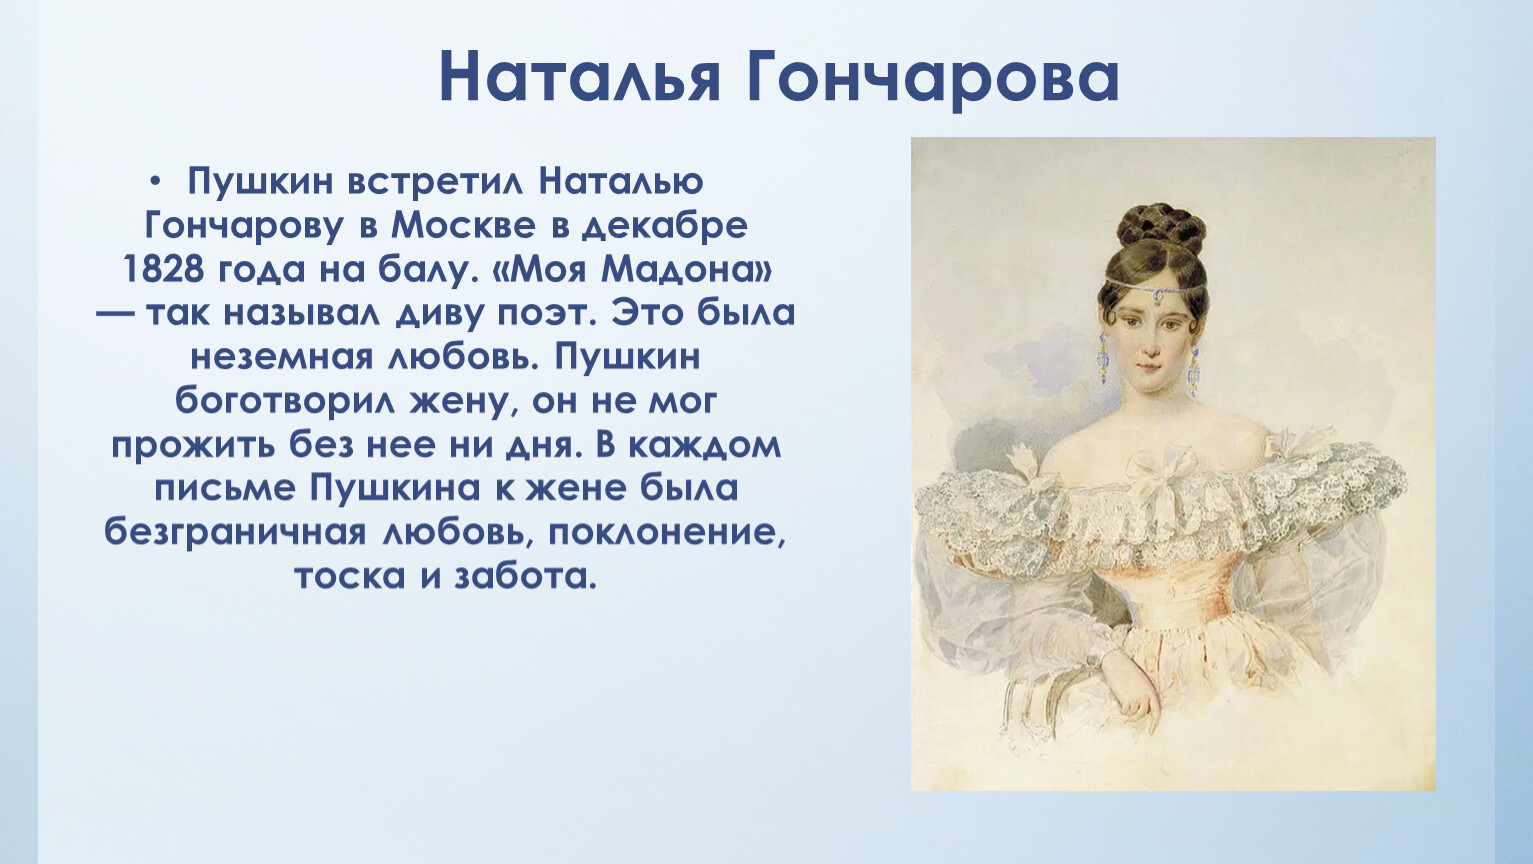 где венчался пушкин с гончаровой в москве